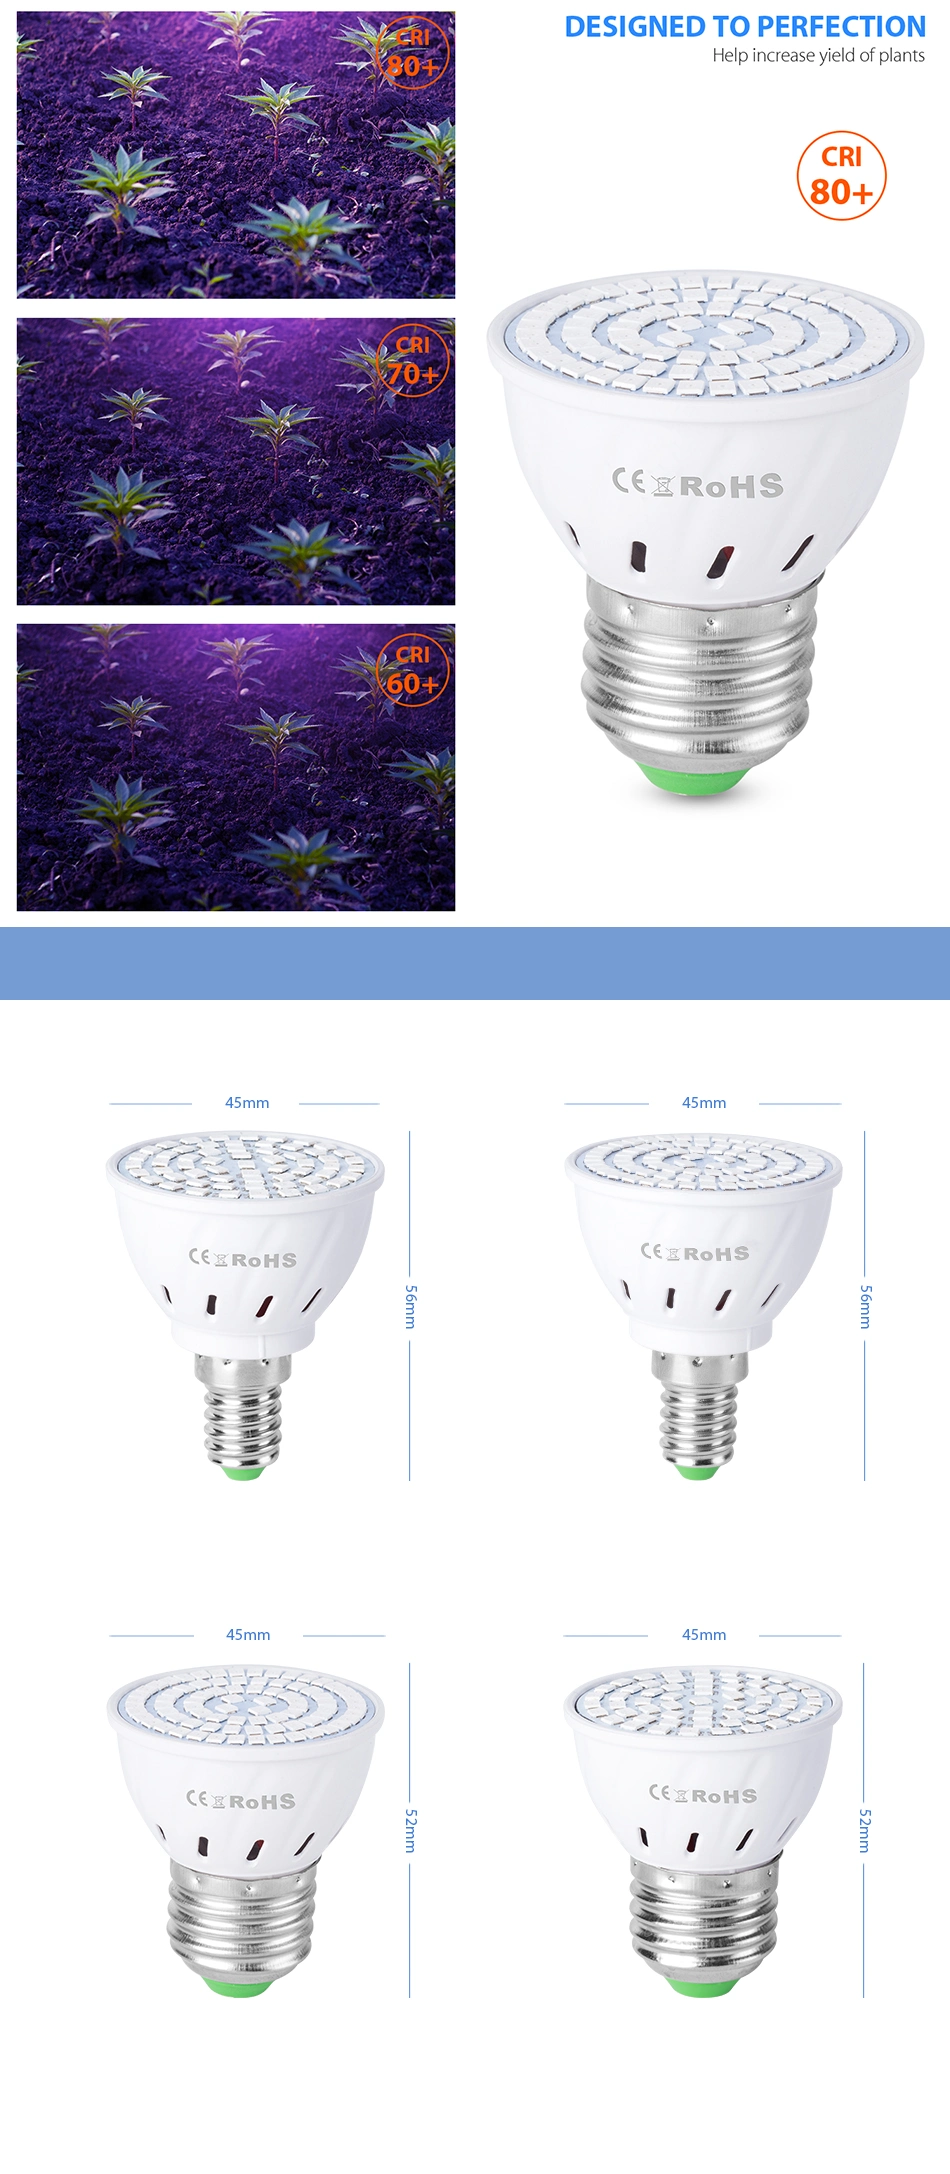 Phyto LED B22 Hydroponic Growth Light E27 LED Grow Bulb MR16 Full Spectrum 220V UV Lamp Plant E14 Flower Seedling Fitolamp GU10